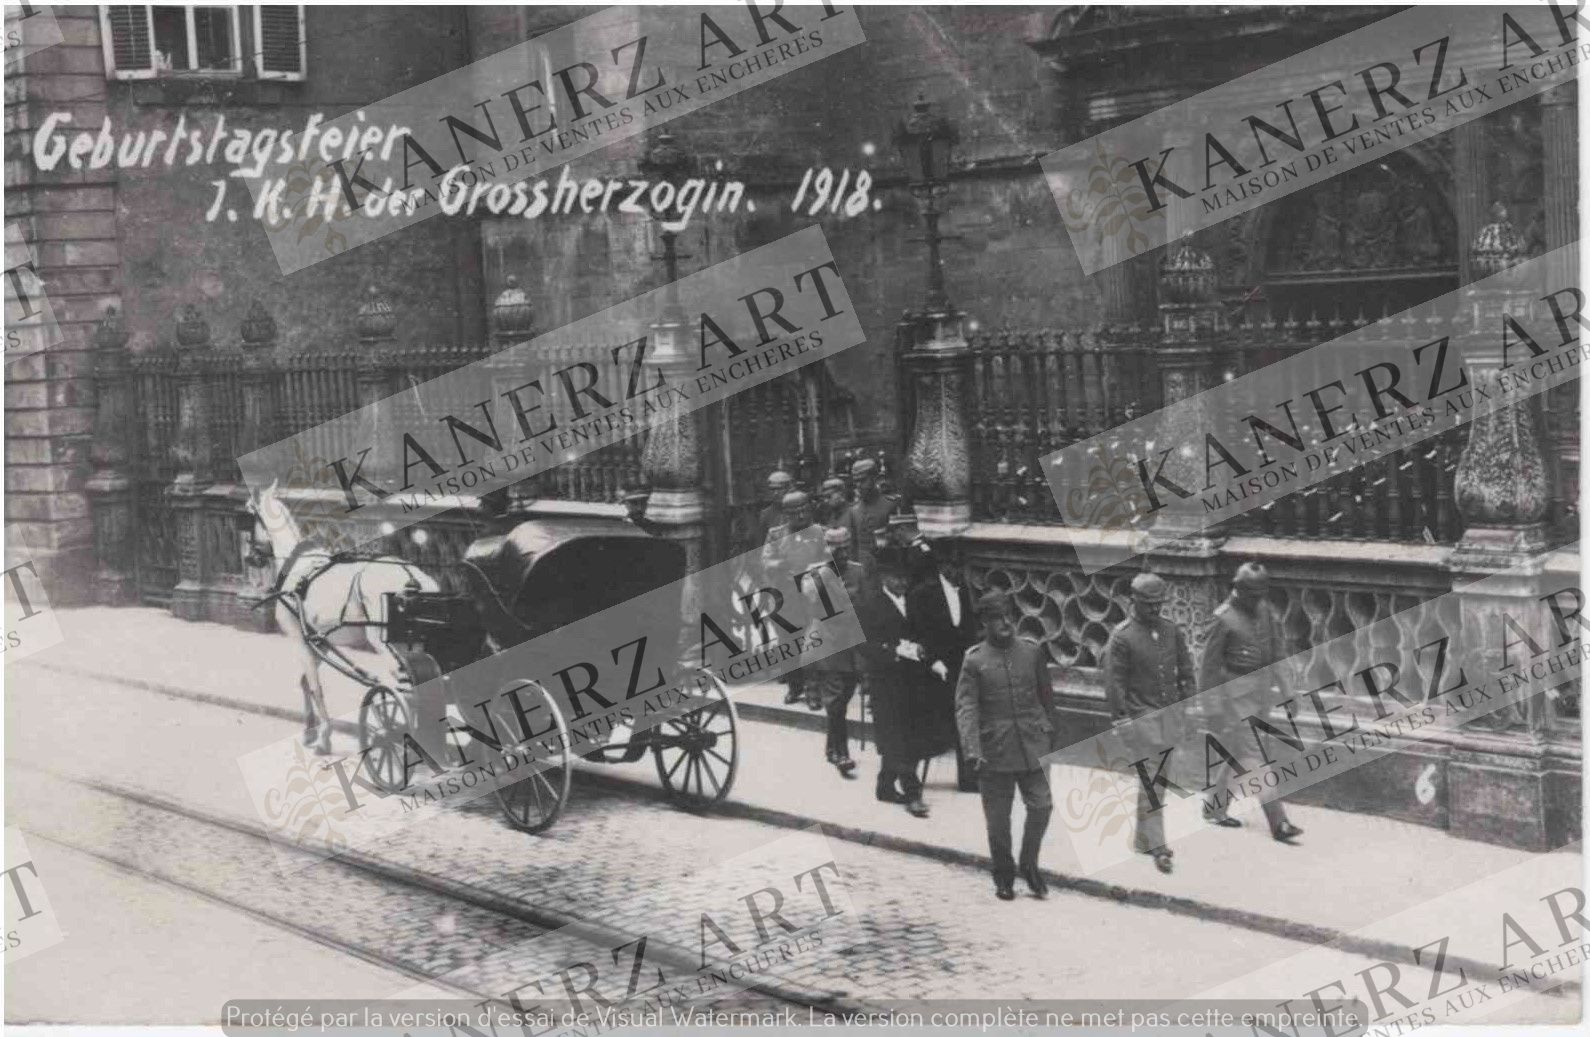 Null (OFFICIALS）照片卡 "Gebuertstagsfeier J. K. H. Der Grossherzogin.1918年"，普鲁士军官离开&hellip;